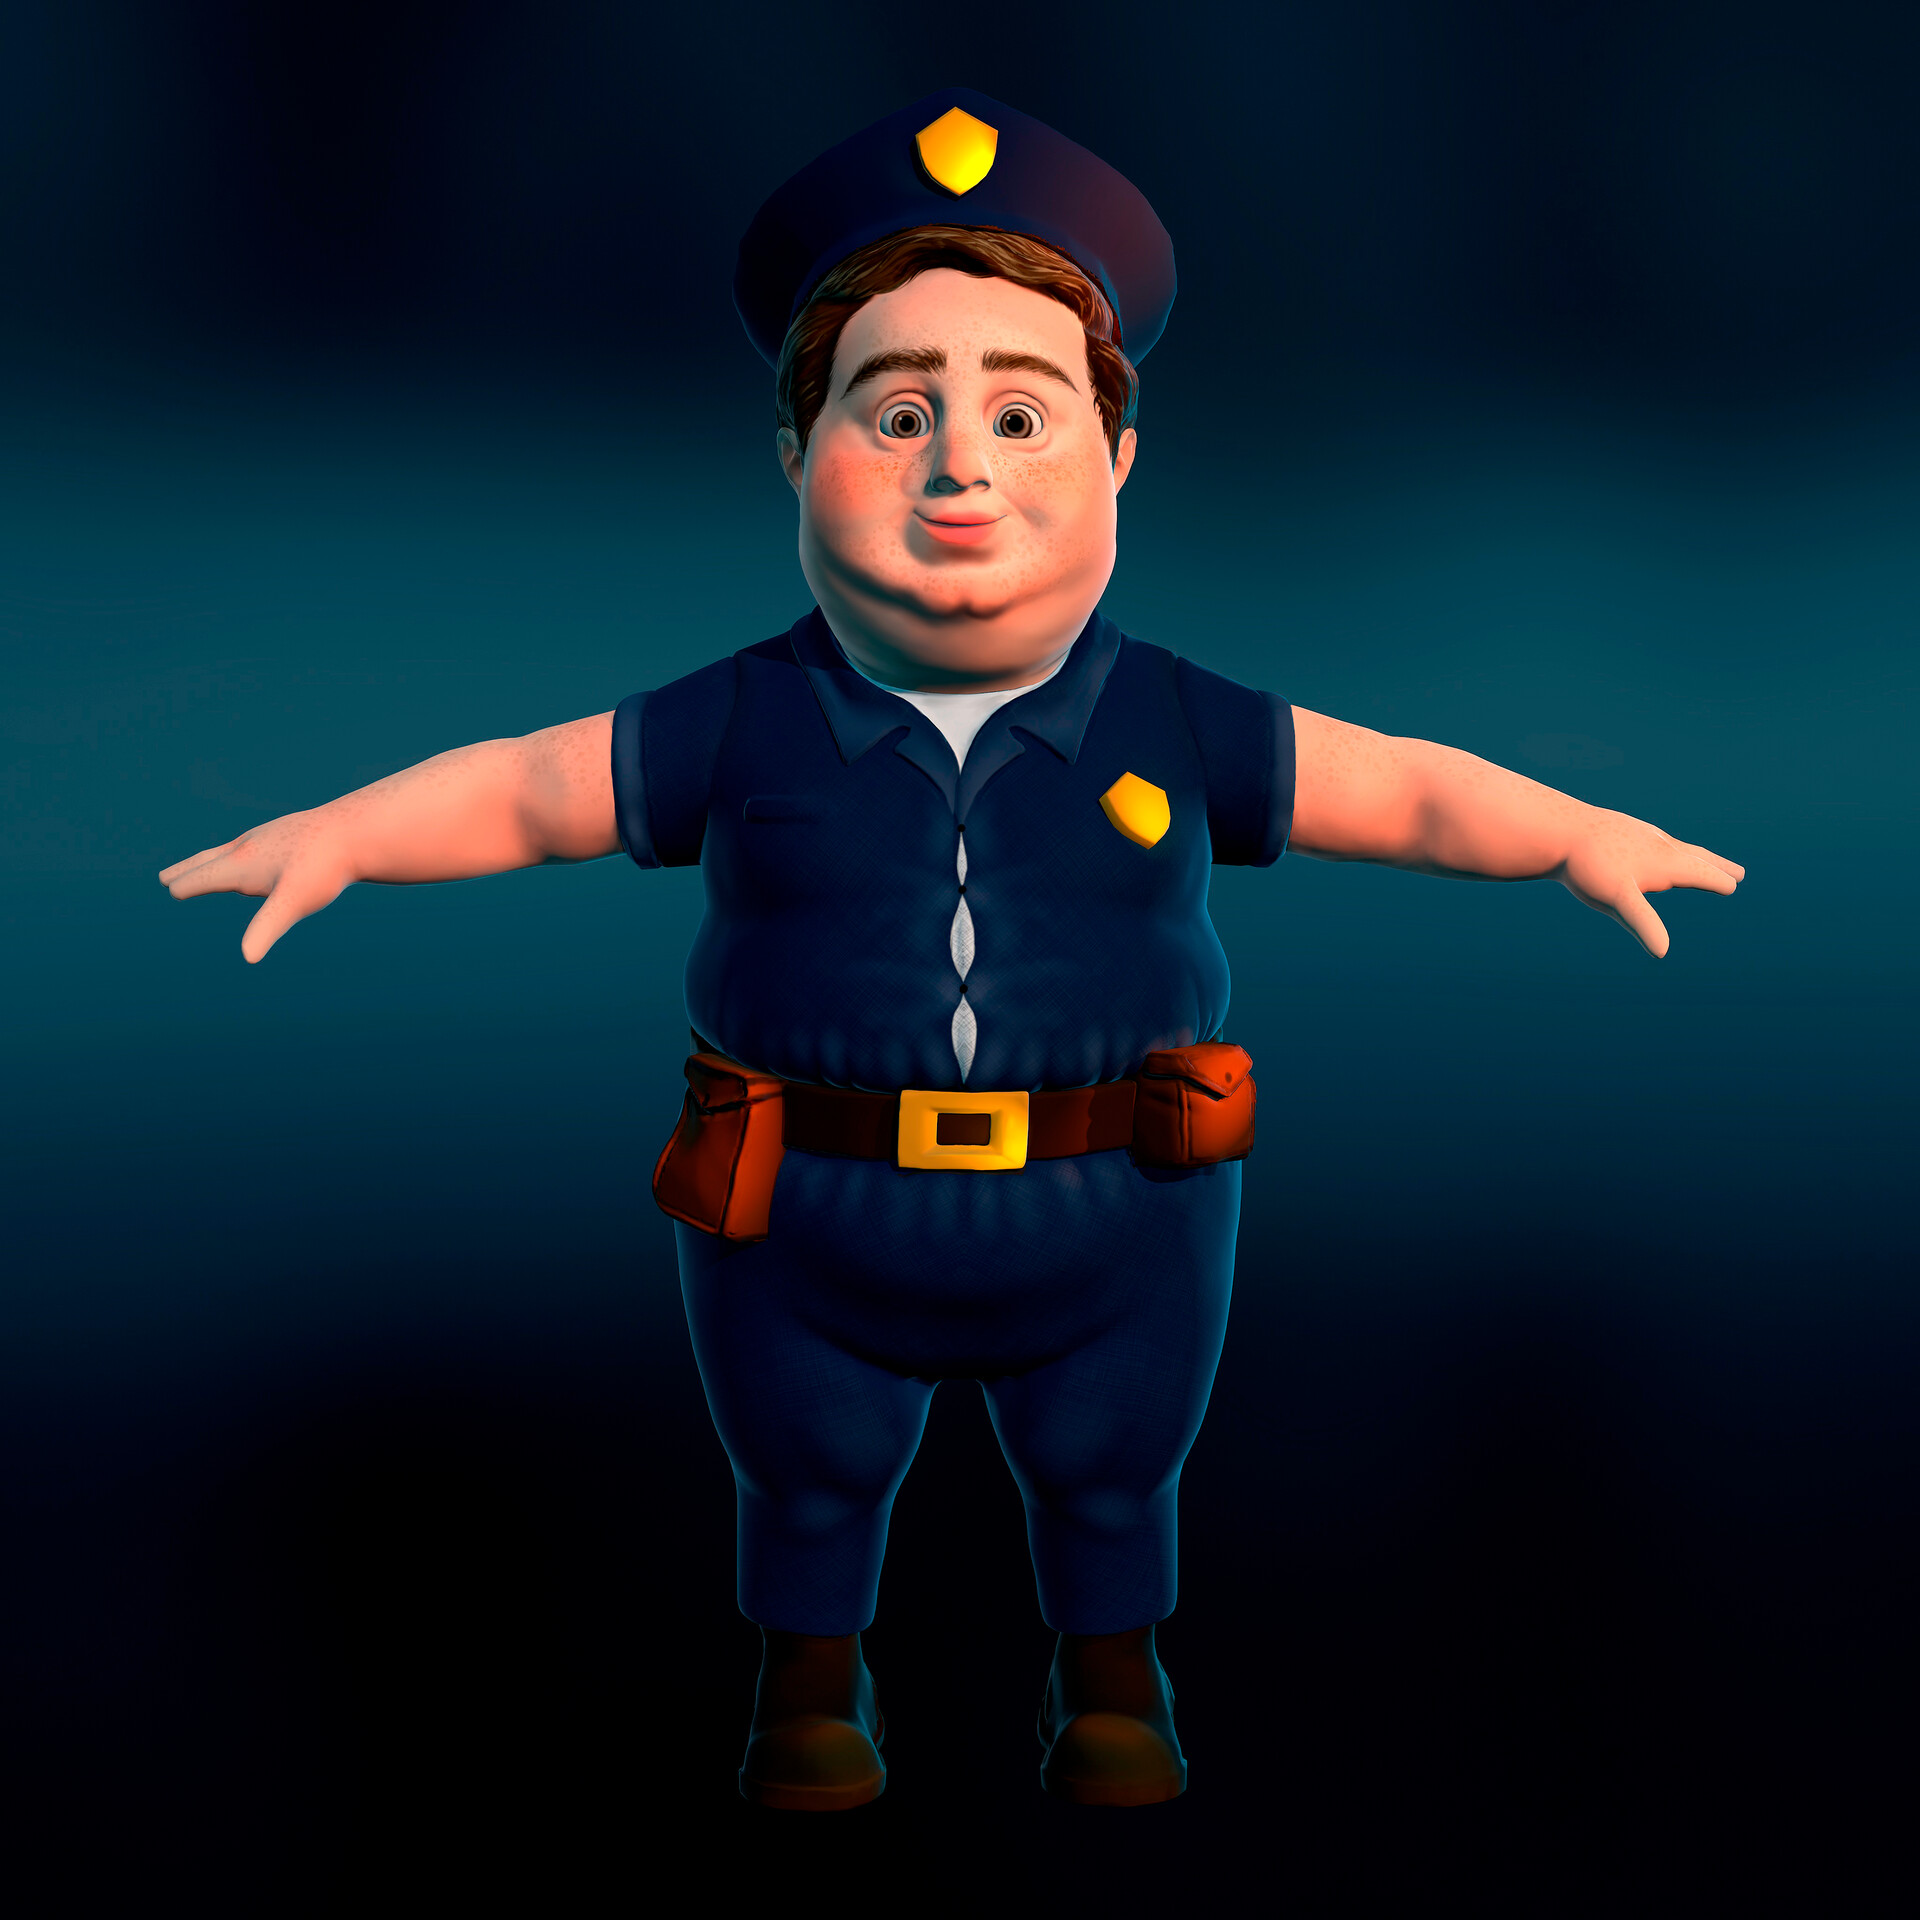 ArtStation - Policeman